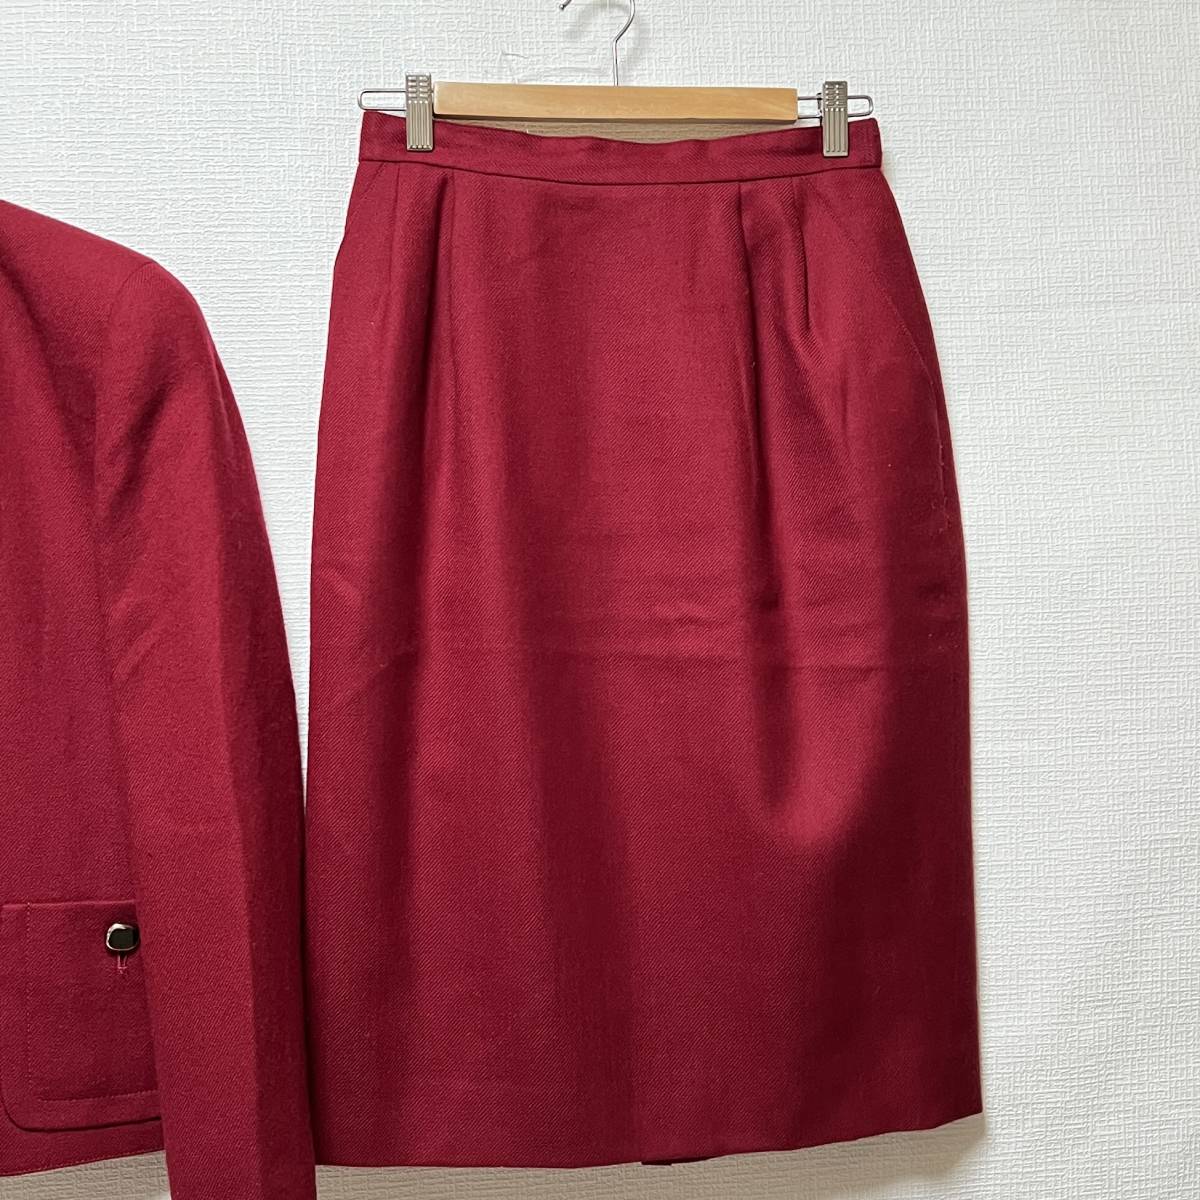 即決 ジュンアシダ jun ashida スカートスーツ 赤 サイズ11 ゆうパック可 (661570)_画像3